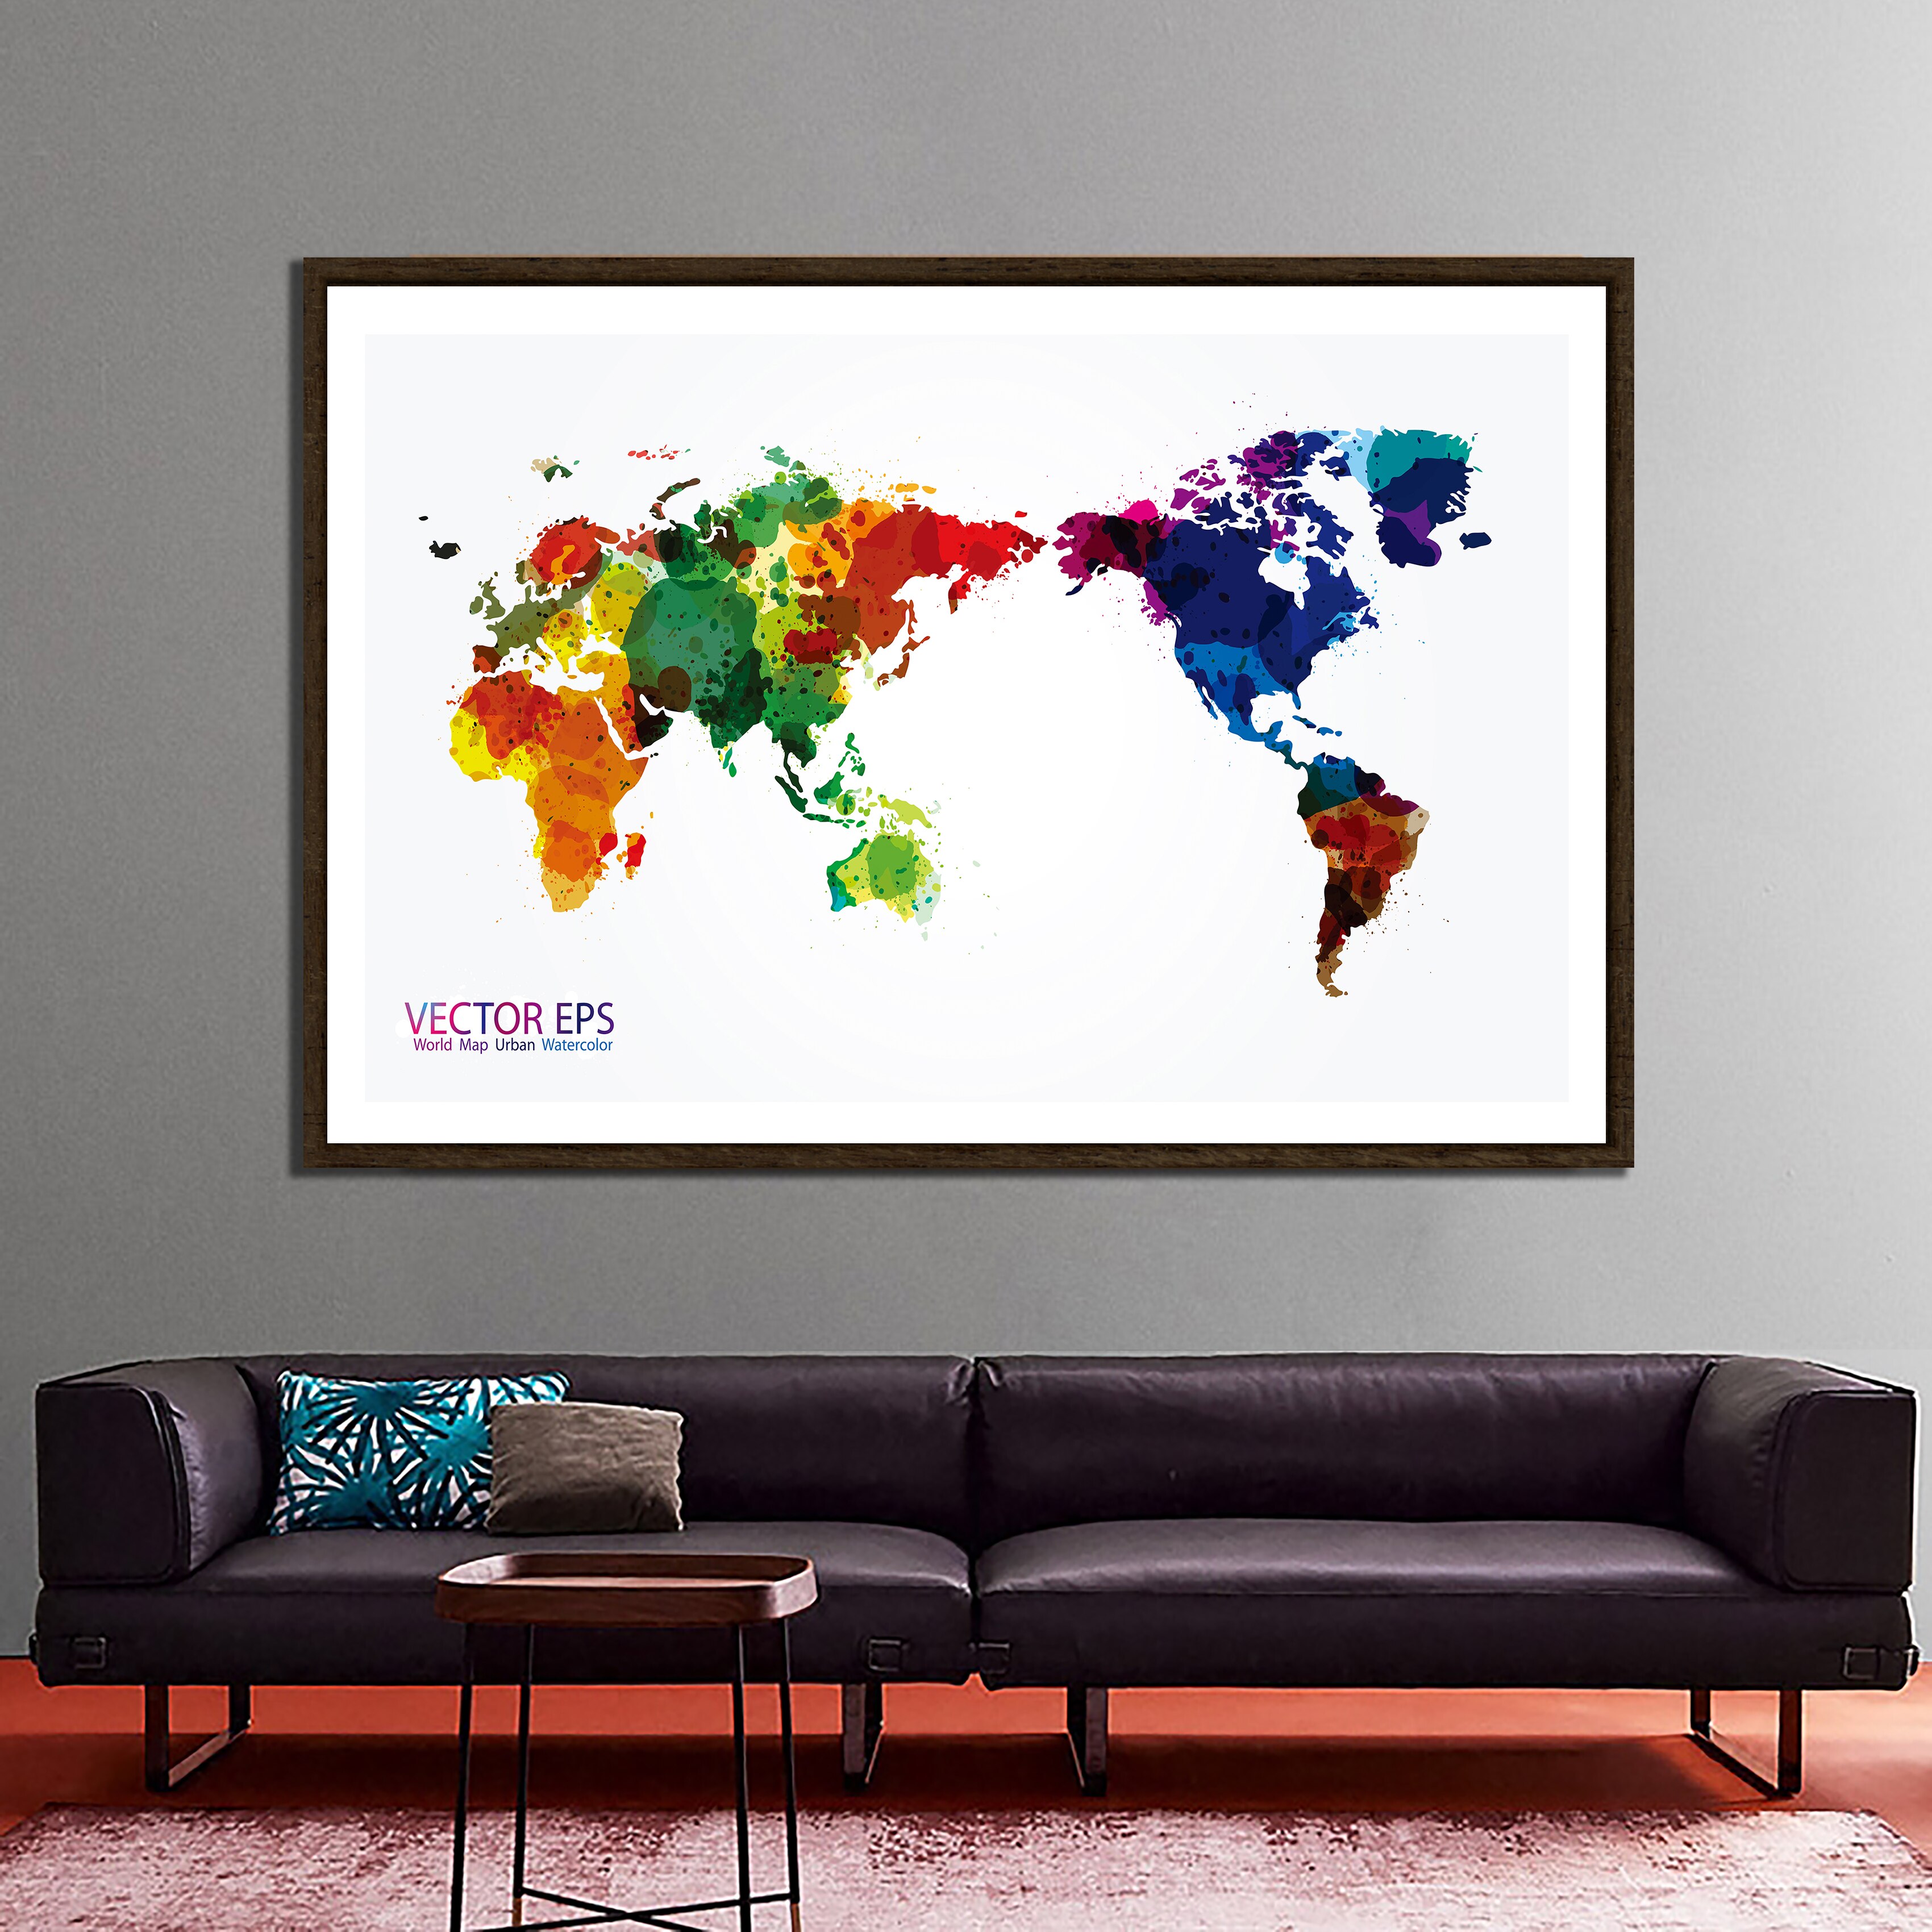 150x225cm VECTOR EPS World Map Urban Watercolor Home Office Wall Decor World Map Non-woven DIY World Map